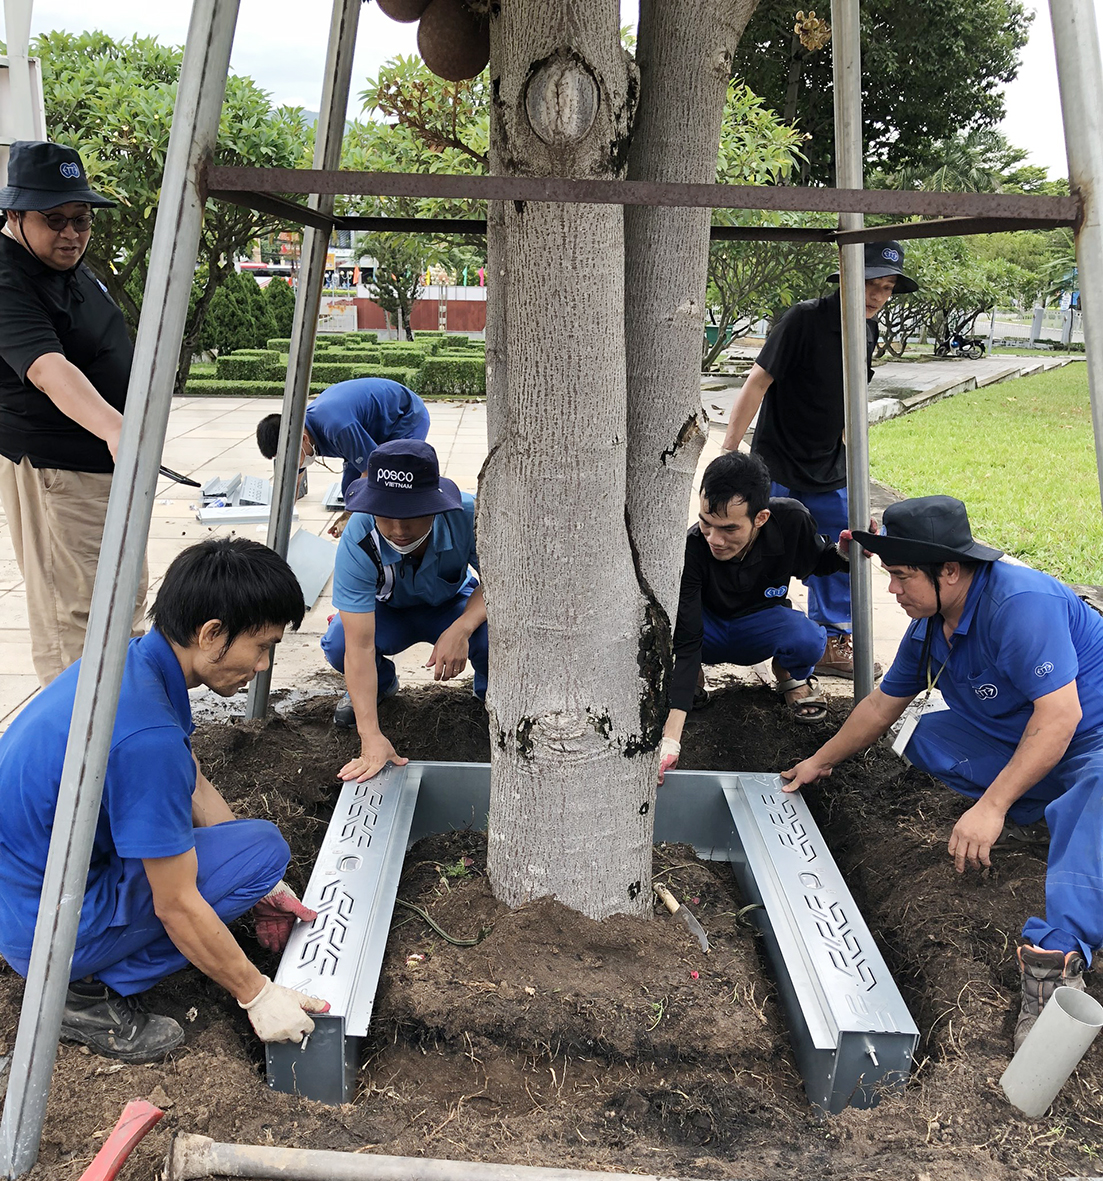 Lắp đặt thử nghiệm hệ thống trữ nước tưới ngầm cho cây xanh trong khuôn viên Đài tưởng niệm liệt sĩ TX. Phú Mỹ.  